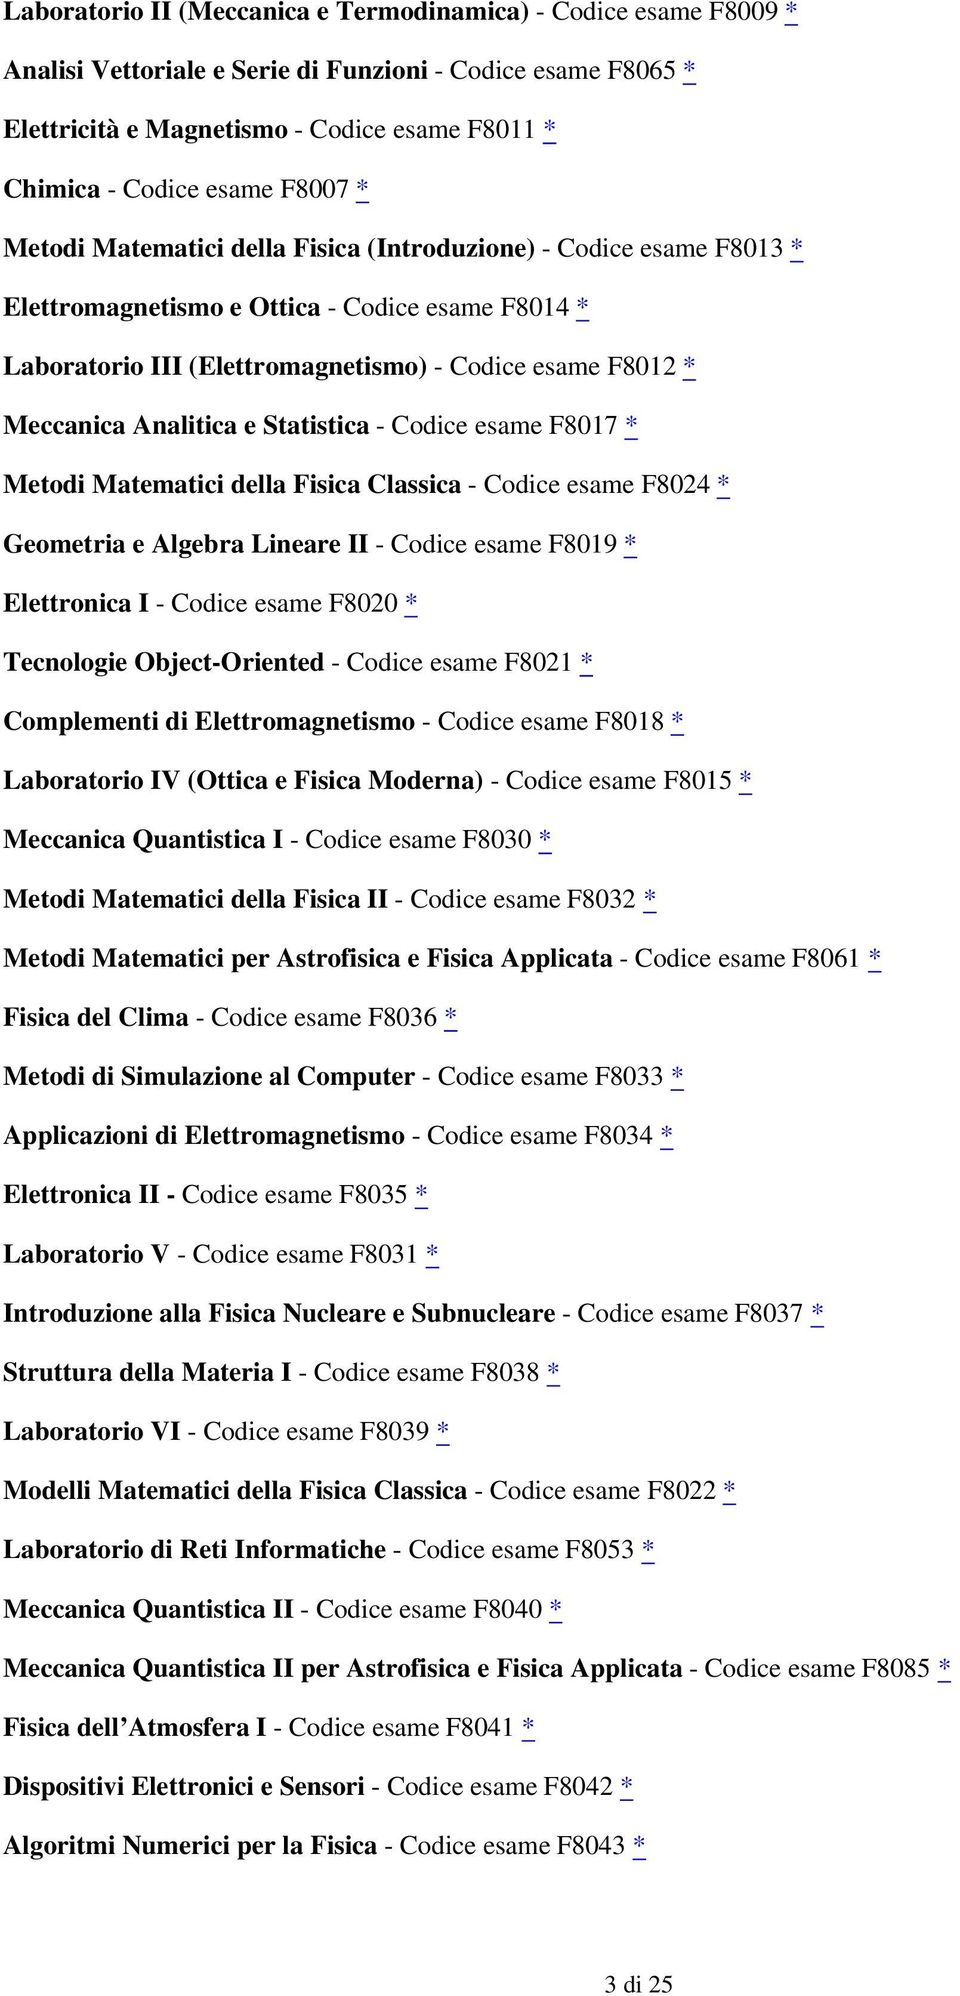 Meccanica Analitica e Statistica - Codice esame F8017 * Metodi Matematici della Fisica Classica - Codice esame F8024 * Geometria e Algebra Lineare II - Codice esame F8019 * Elettronica I - Codice